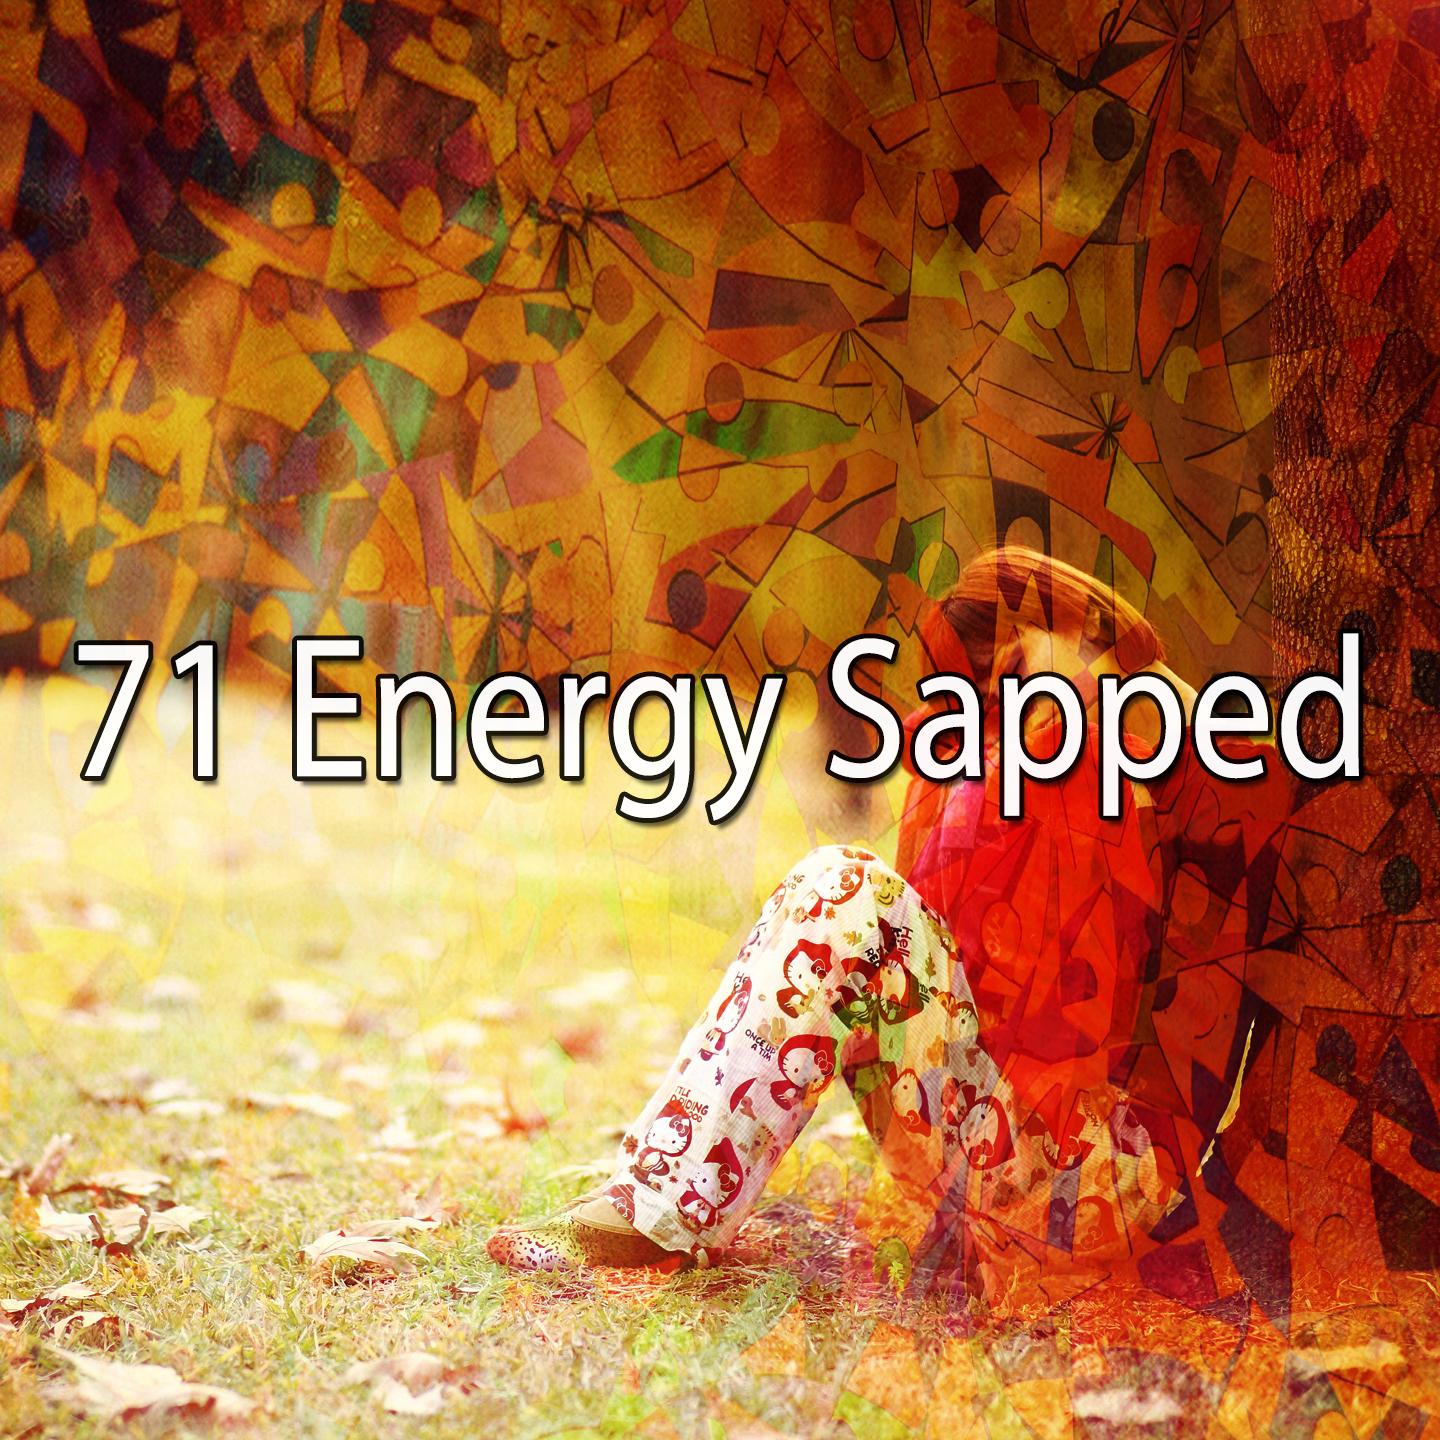 71 Energy Sapped